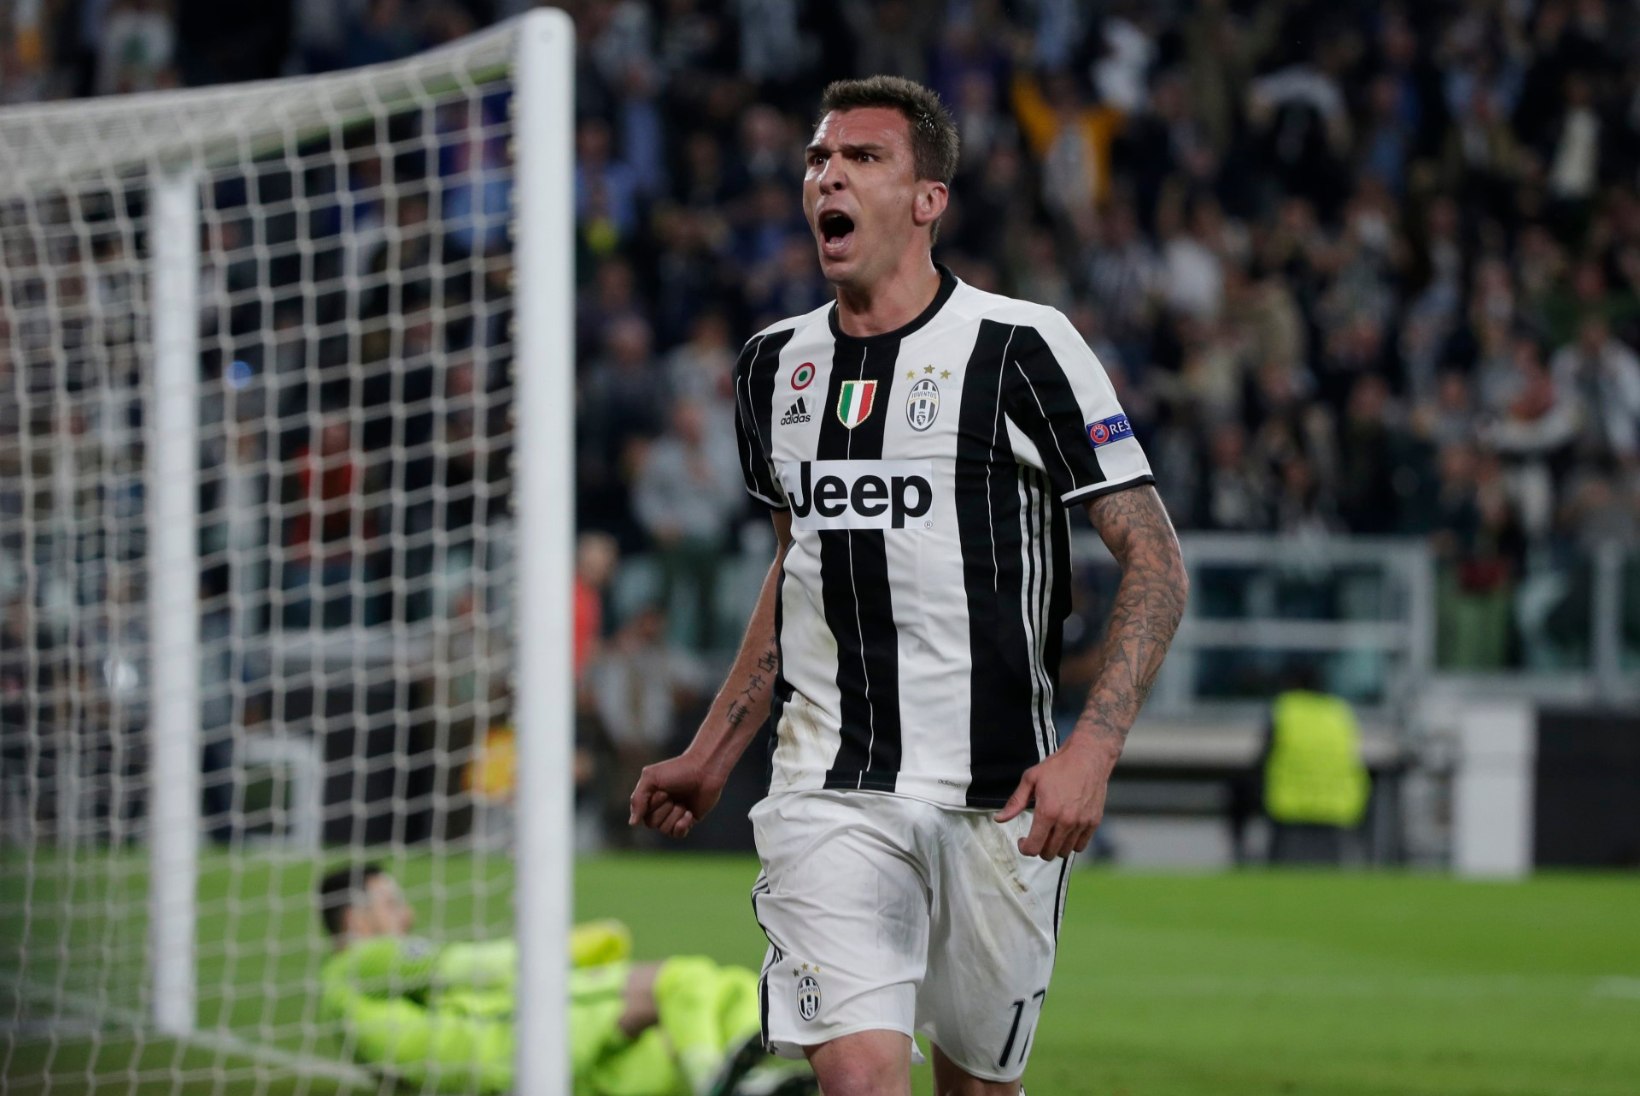 NII SEE JUHTUS | Sport 09.05: Torino Juventus kindlustas kohe Meistrite liiga finaalis